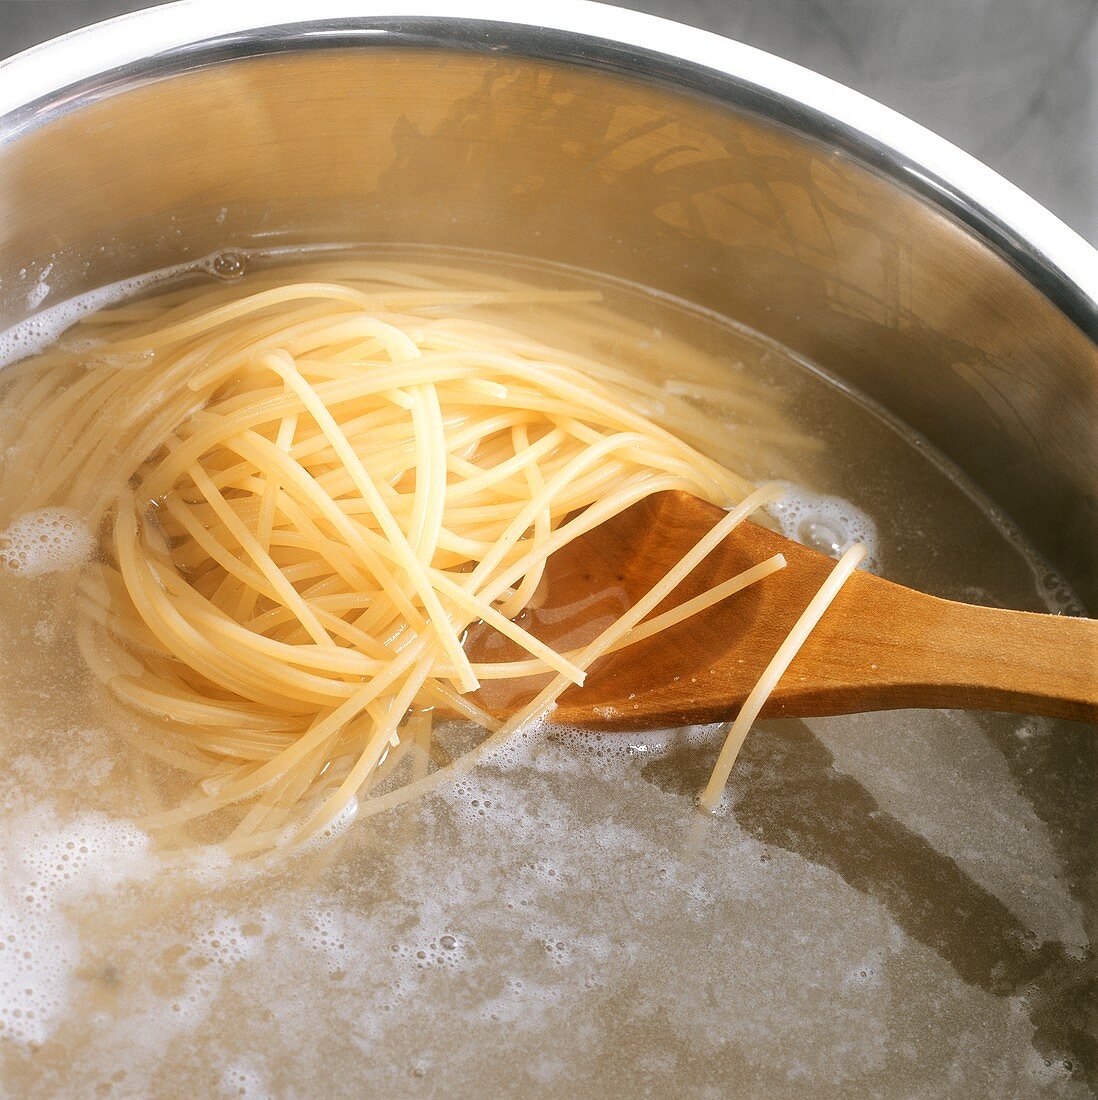 Spaghetti kochen: Nudeln mit Holzlöffel im Wasser rühren